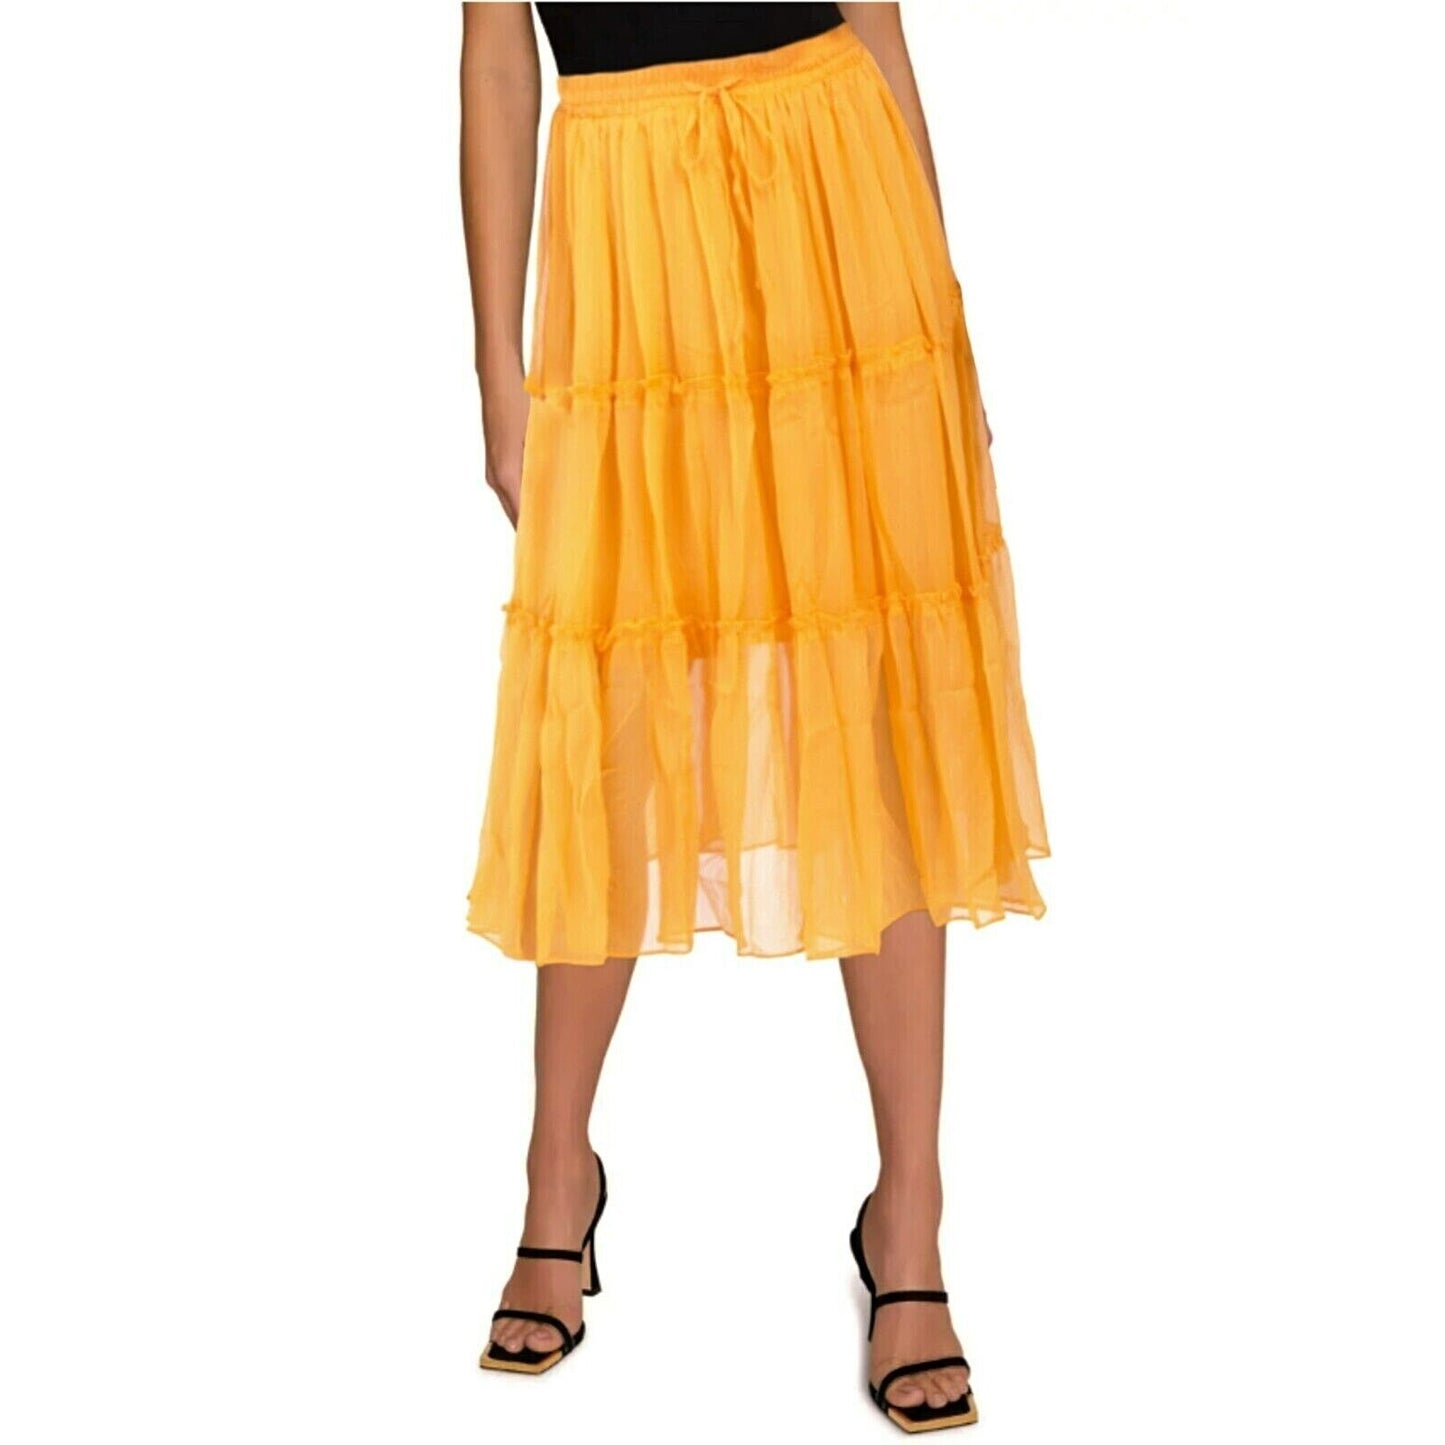 WDNY Tiered Sheer Overlay Ruffle Trim Elastic Waist Flowy Midi Skirt